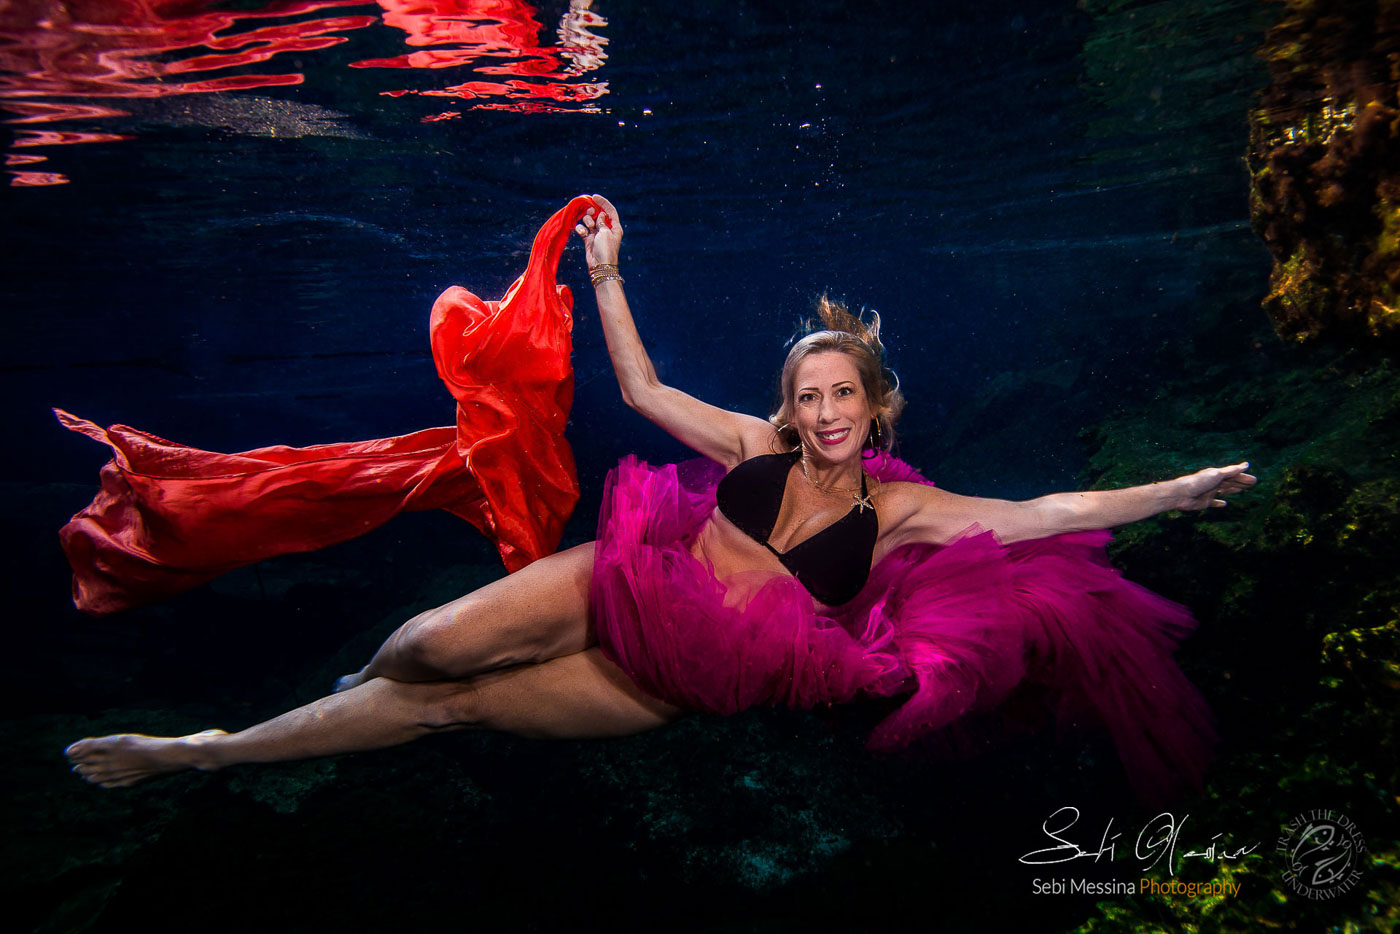 Underwater Photo Shoot Tulum – Sebi Messina Photography – Beautiful women flying underwater.